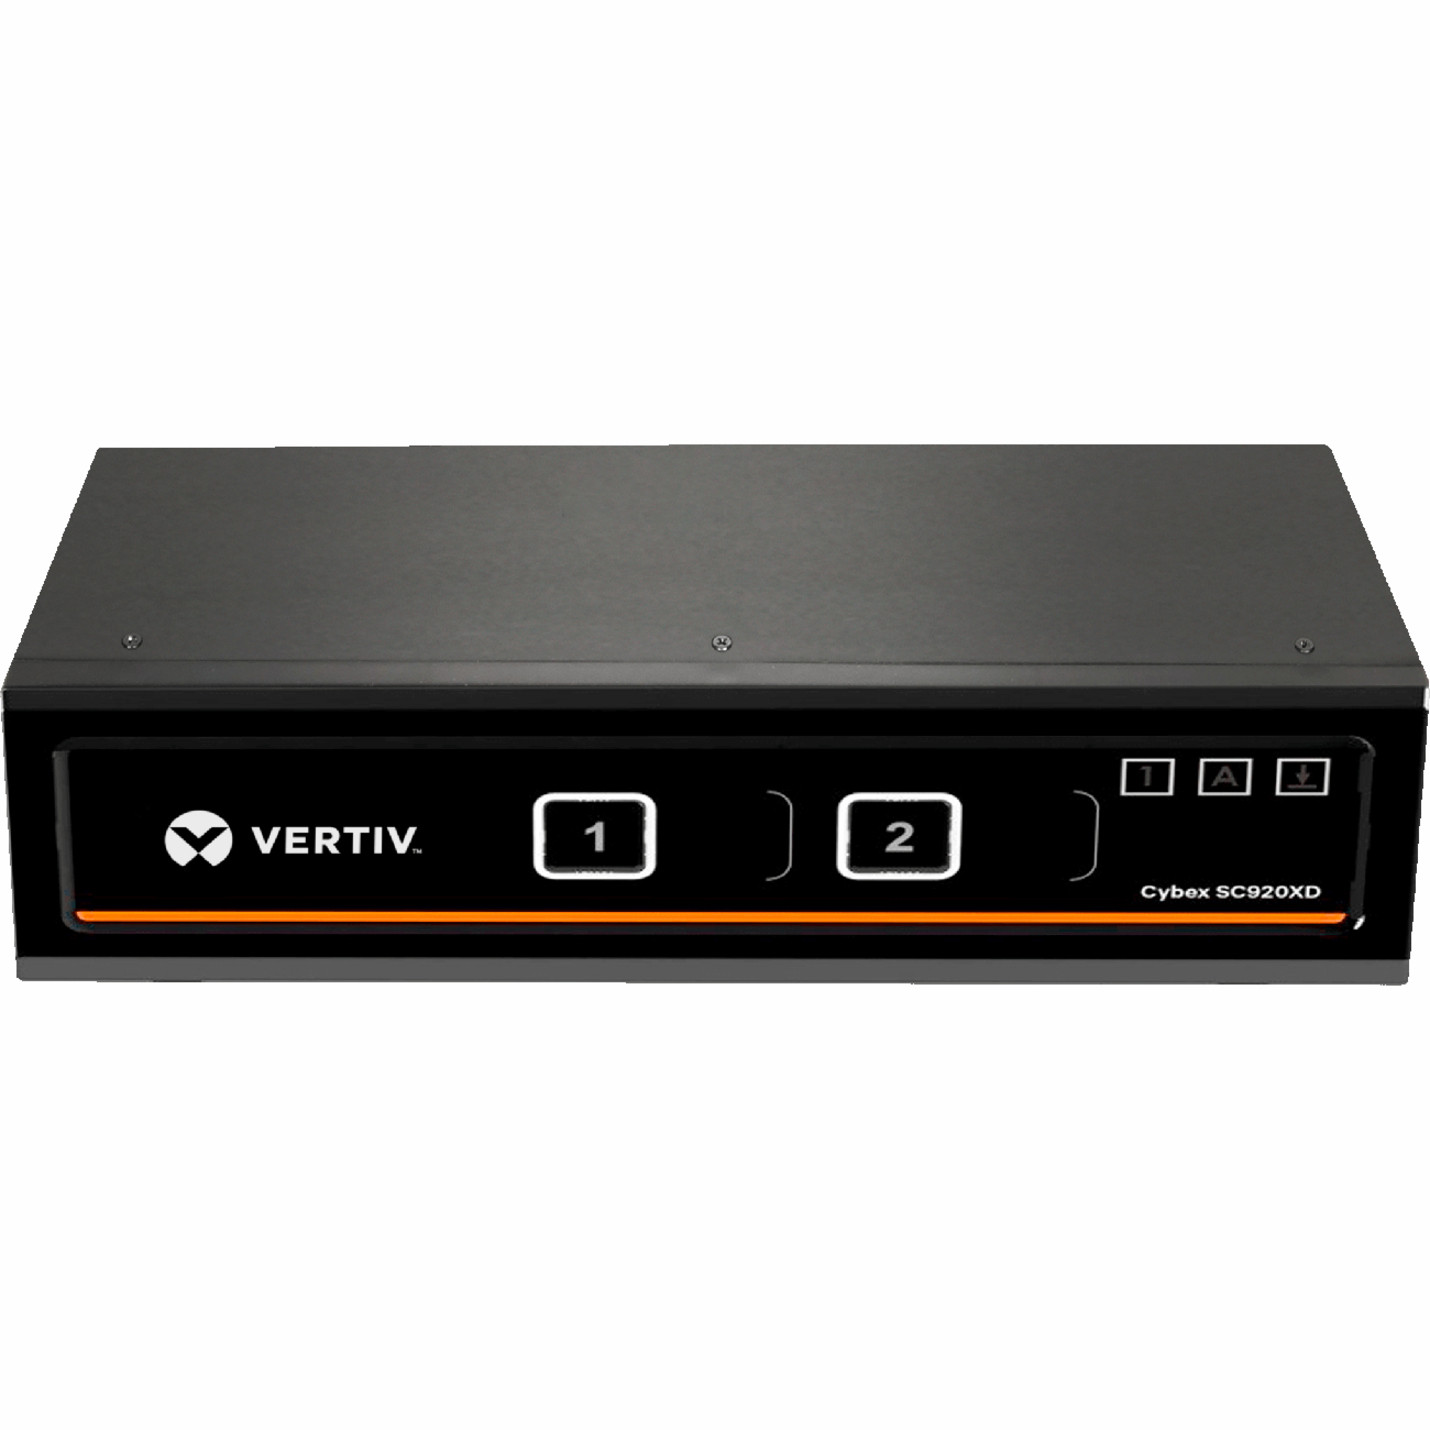 Vertiv AVOCENT Cybex SC920XP KVM Switchbox2 ComputerDVIDisplayPortTAA Compliant SC920XP-001